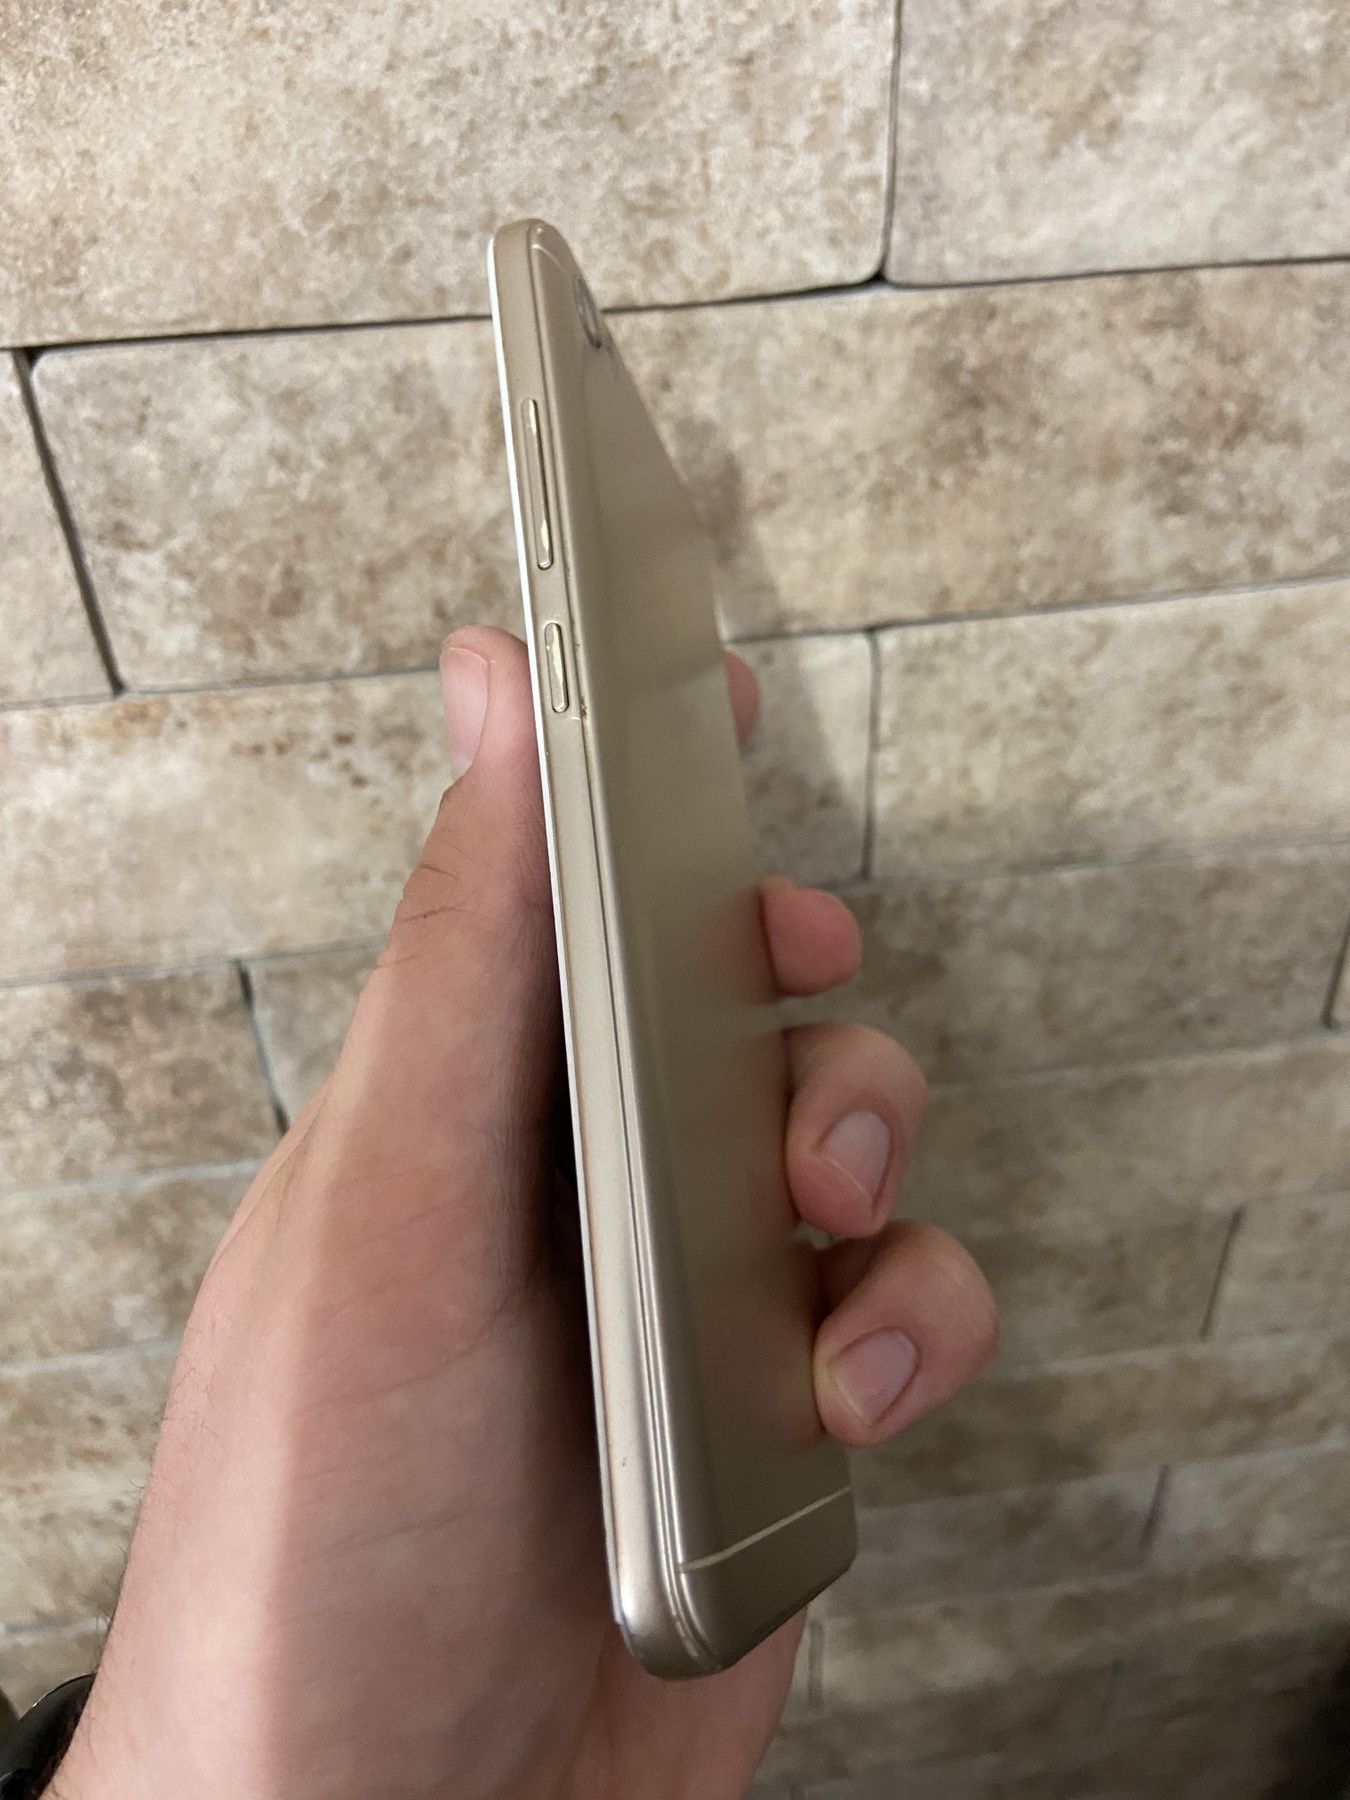 Xiaomi Redmi Note 5A 2/16